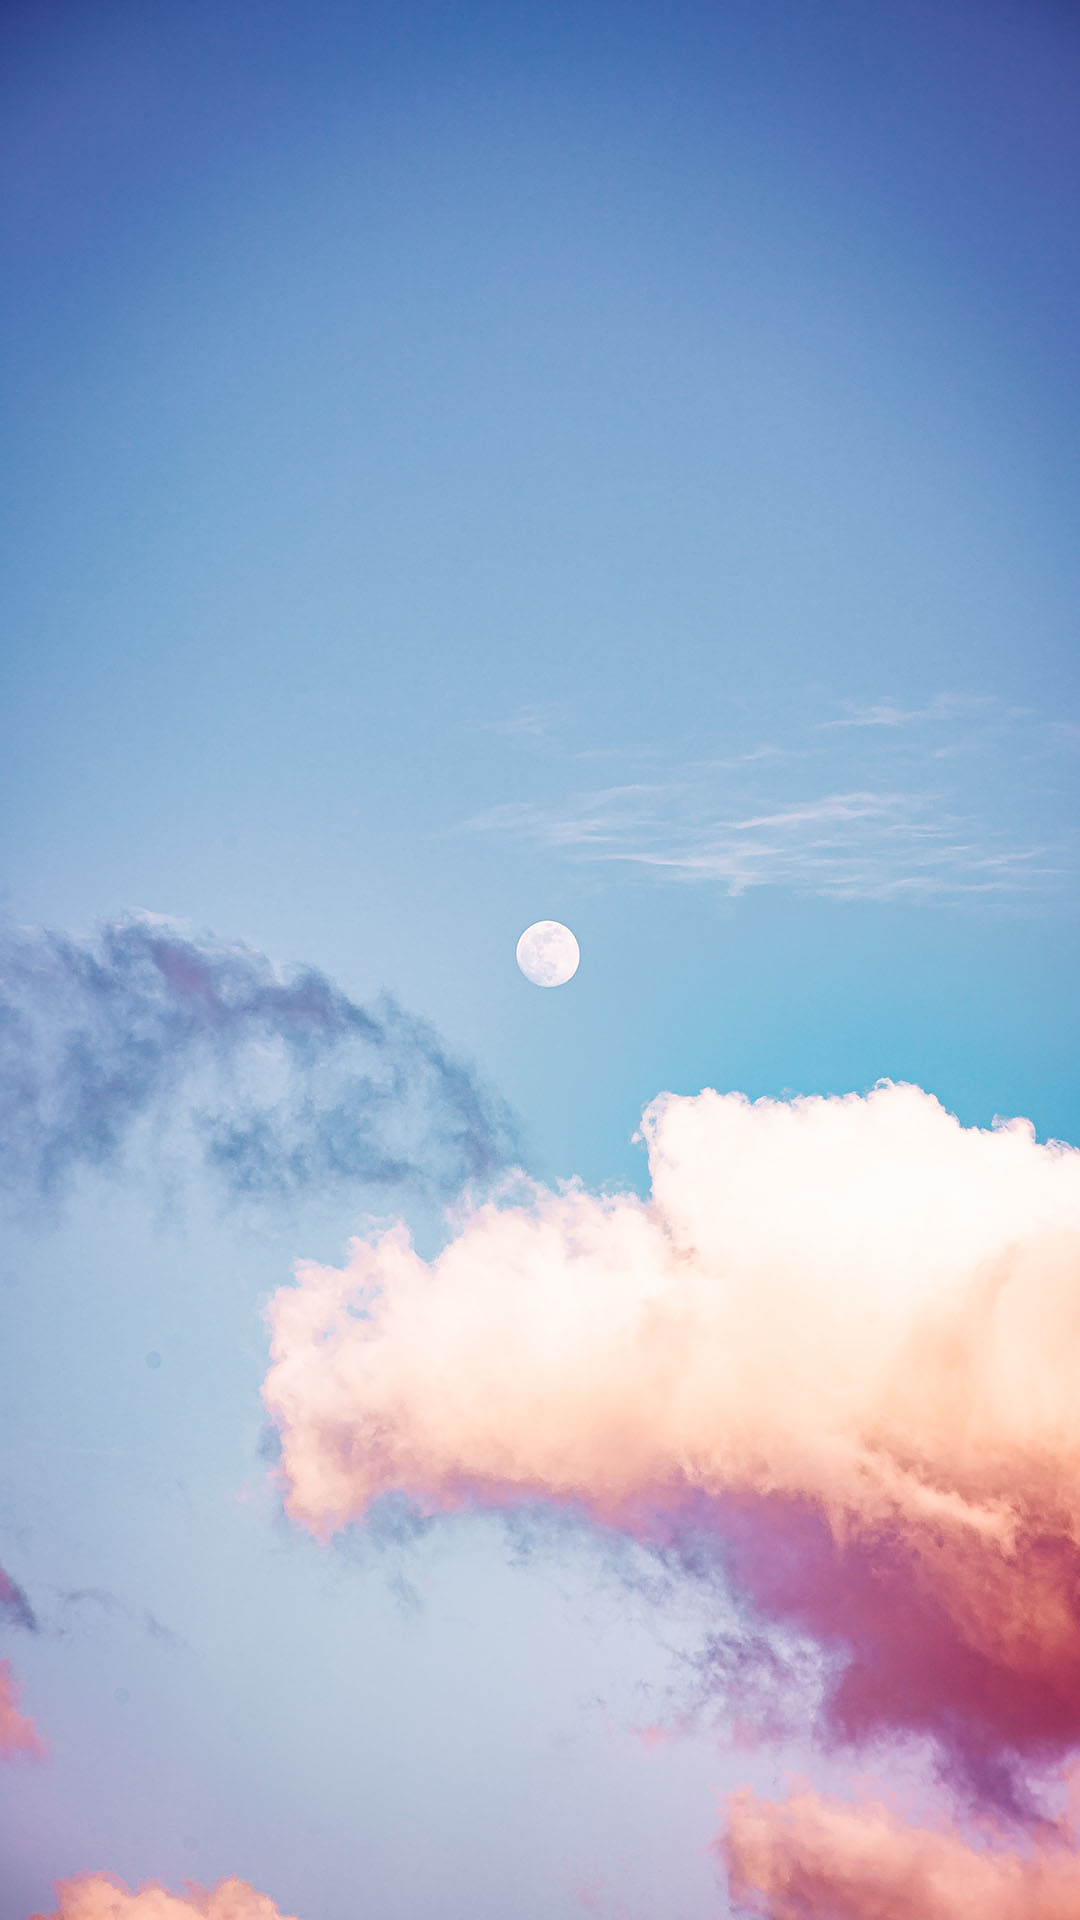 Background mây đẹp: Rút ngắn khoảng cách với bầu trời và dành cho mình khoảnh khắc thư giãn với background mây đẹp. Hãy khám phá hình nền này để nhận được những trải nghiệm tuyệt vời về sự bình yên và thanh bình từ đám mây.